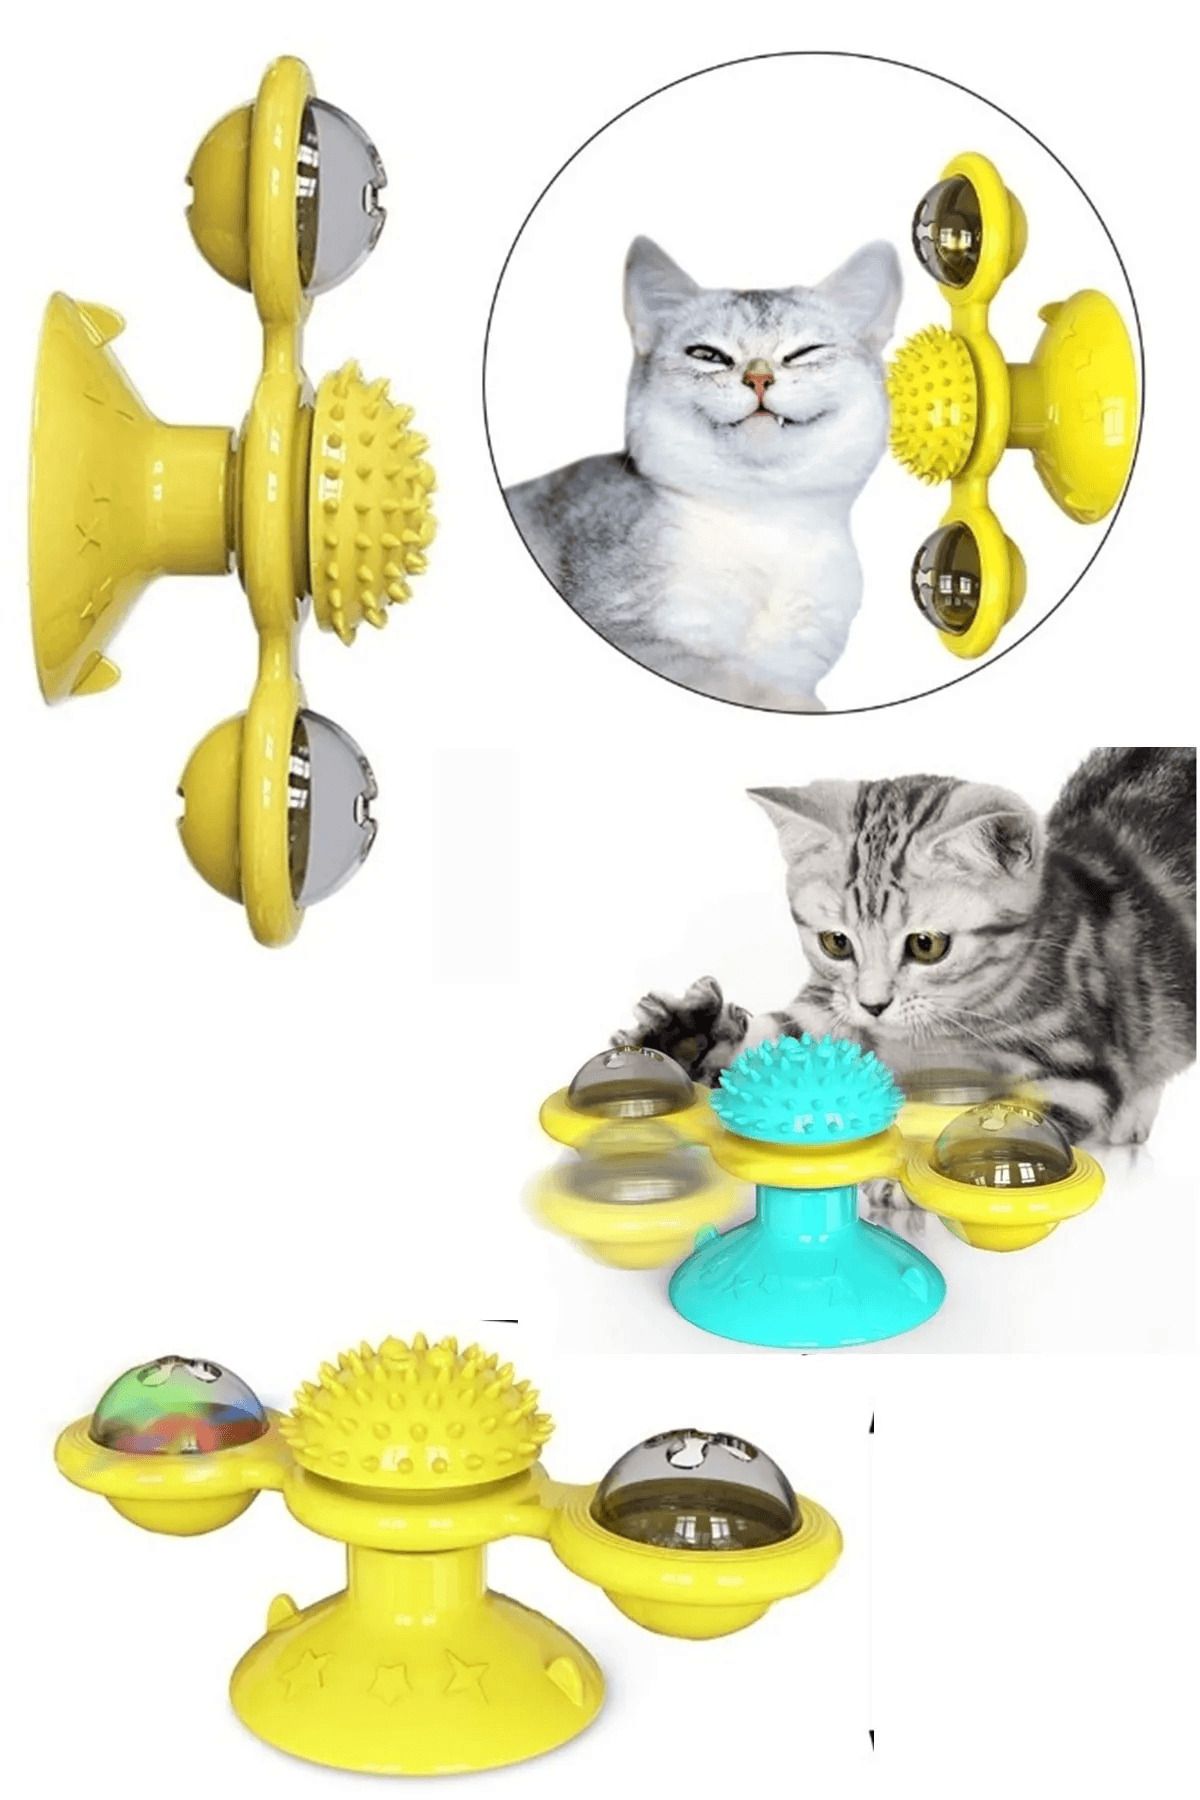 Ardinyo Vantuzlu 360 Derece Dönen Kedi Oyuncağı İnteraktif Fırıldak Işıklı Catnipli Kedi Oyun Topu